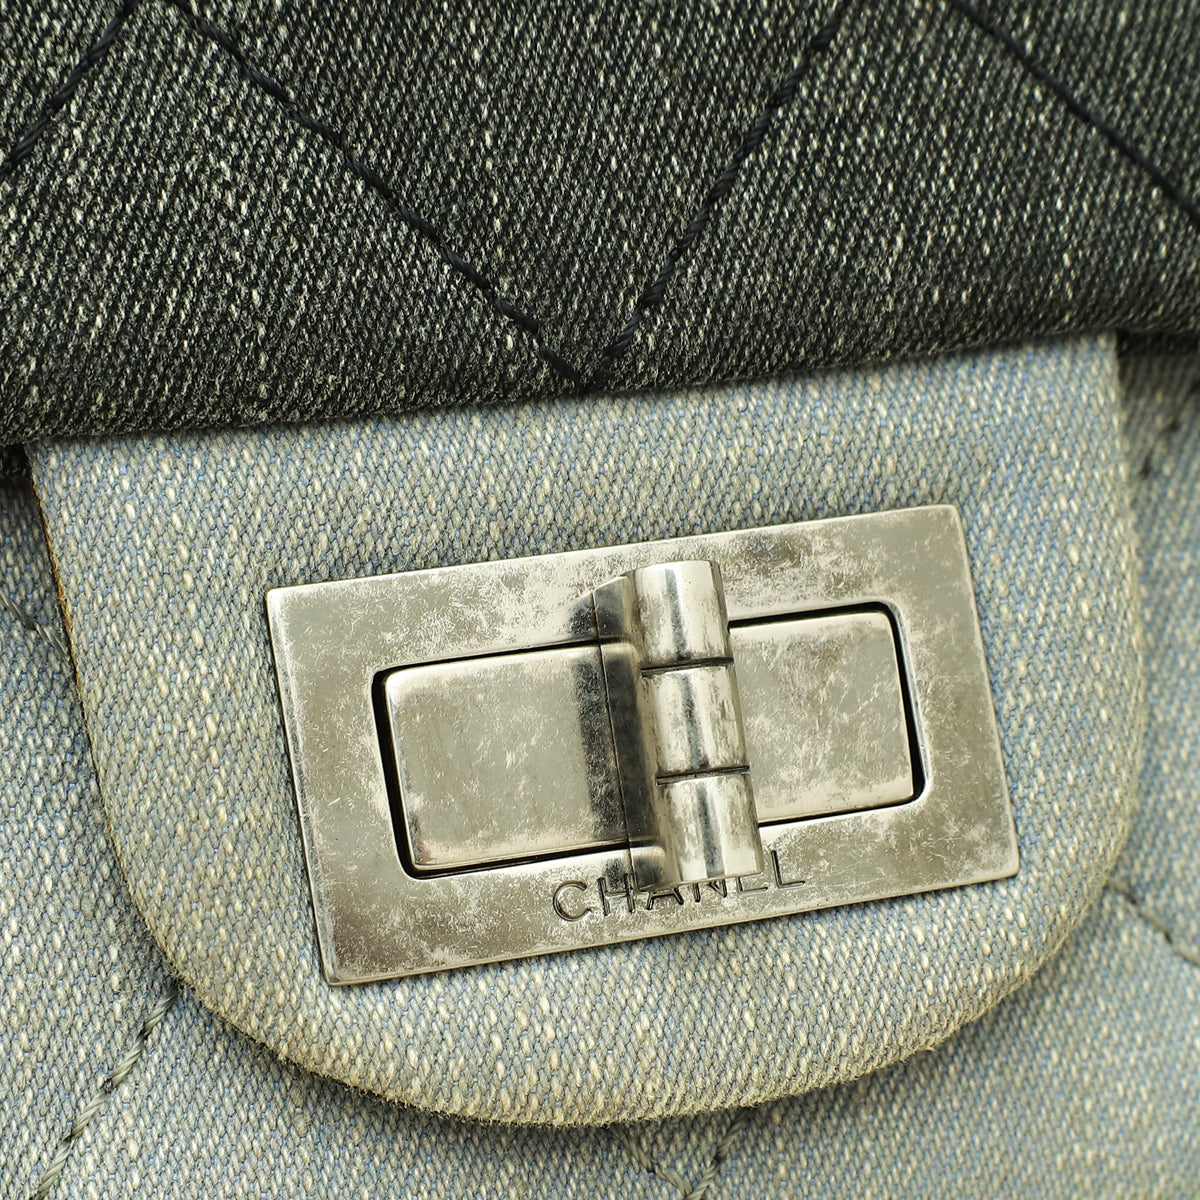 Chanel Multicolor 2.55 Reissue Denim Double Flap 228 Bag